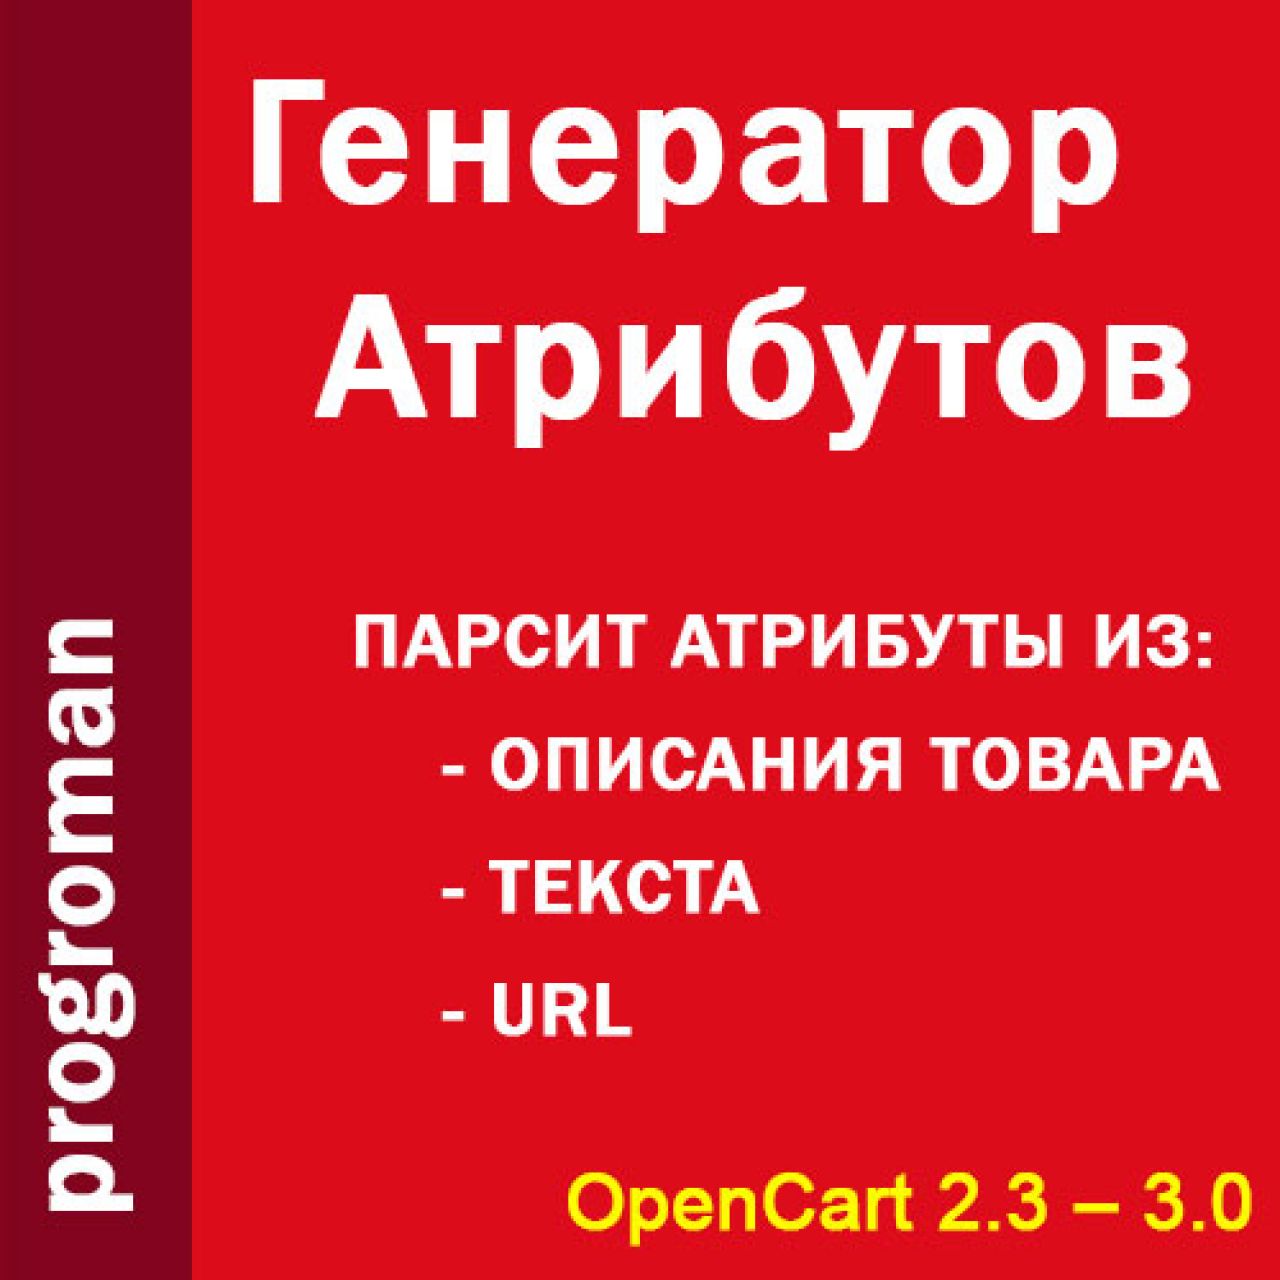  ProgRoman – Генератор атрибутов из категории Атрибуты для CMS OpenCart (ОпенКарт)